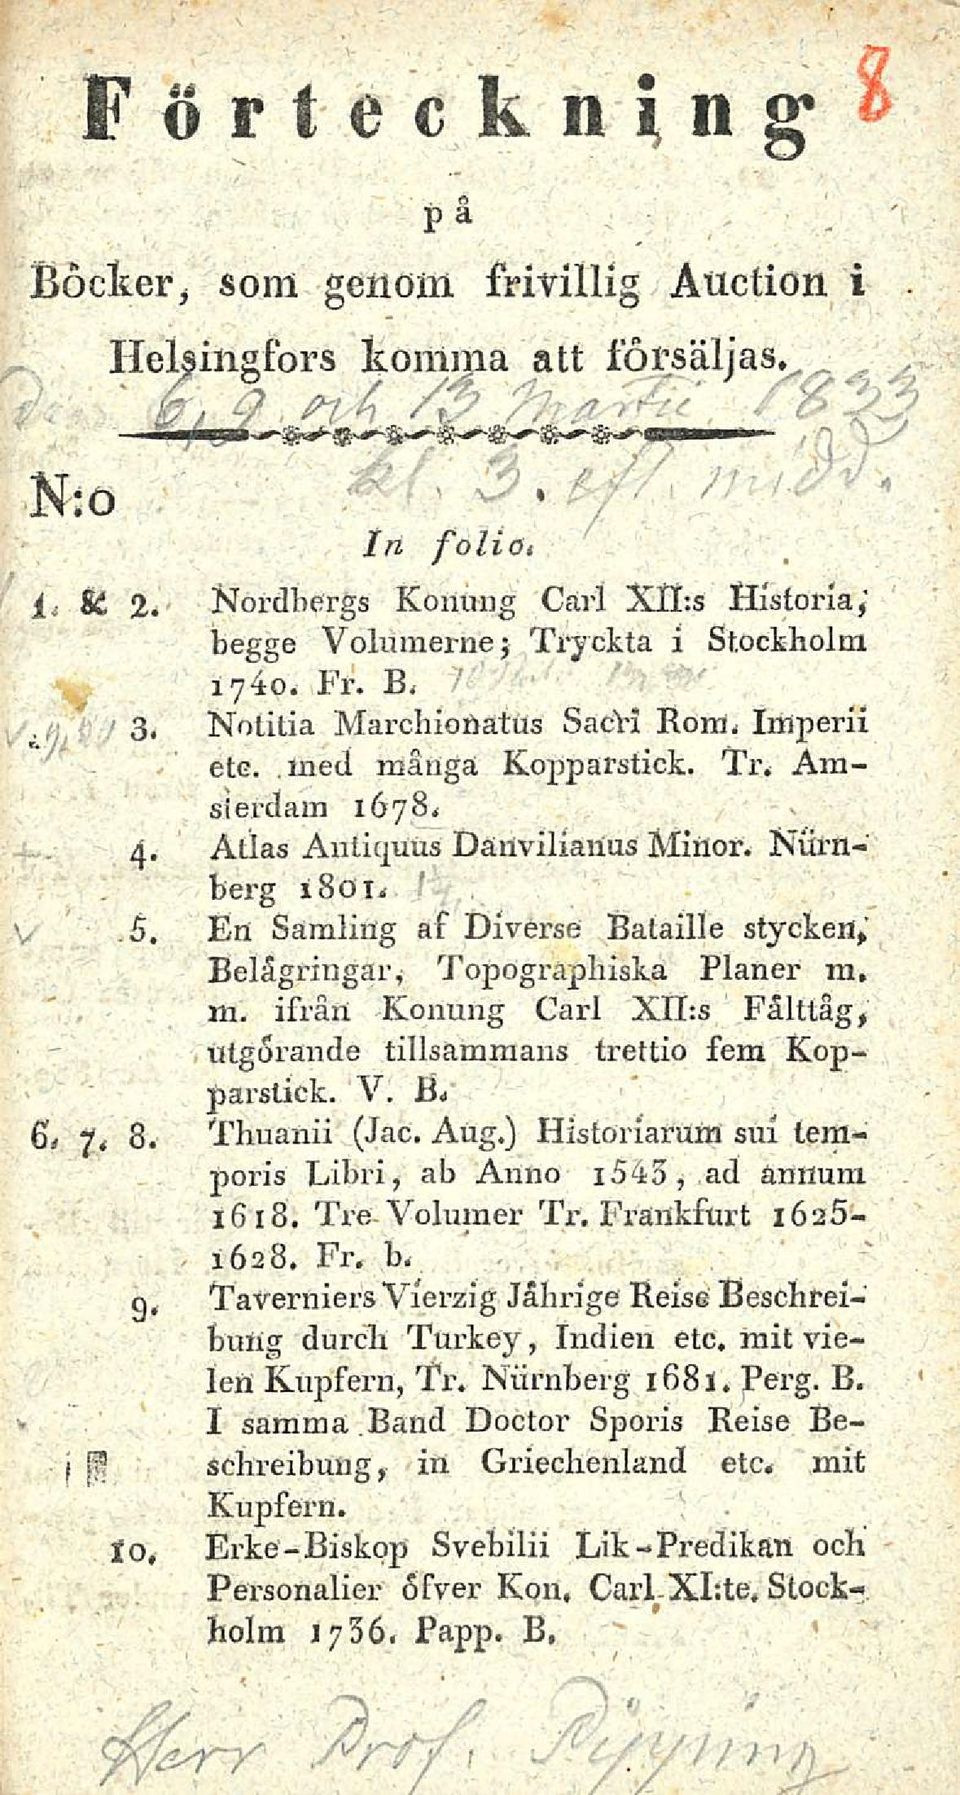 Atlas Anlicjuus Dailvilianus Minor. Niirnberg 1801. 5. En Samling af DivCrse Balaille stycken, Belågringär, Topograpbiska Planer m, m.